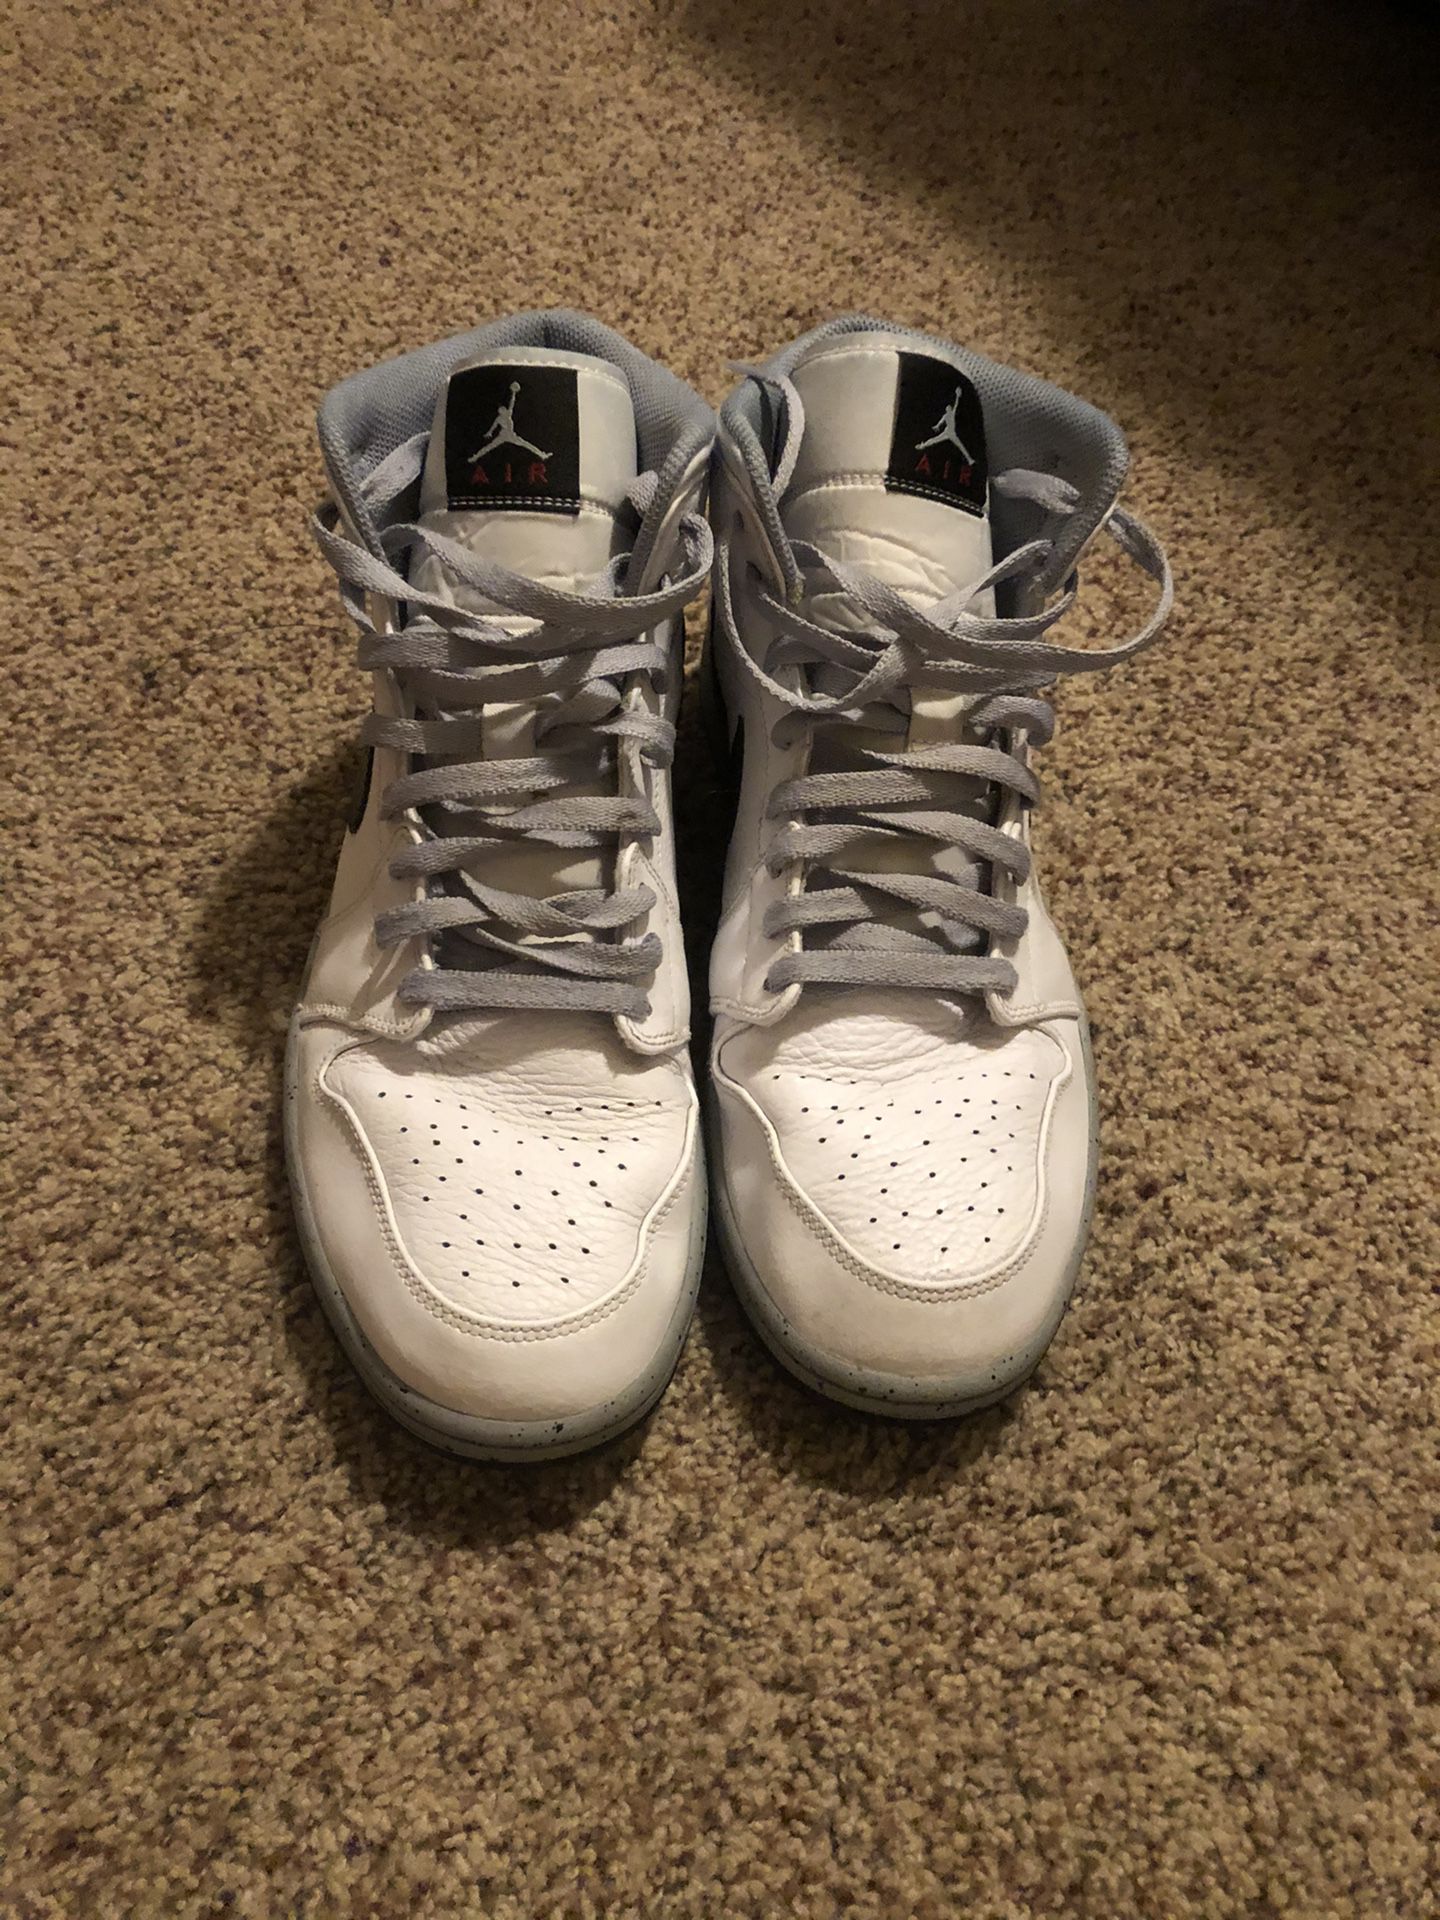 Air Jordan 1 white cement